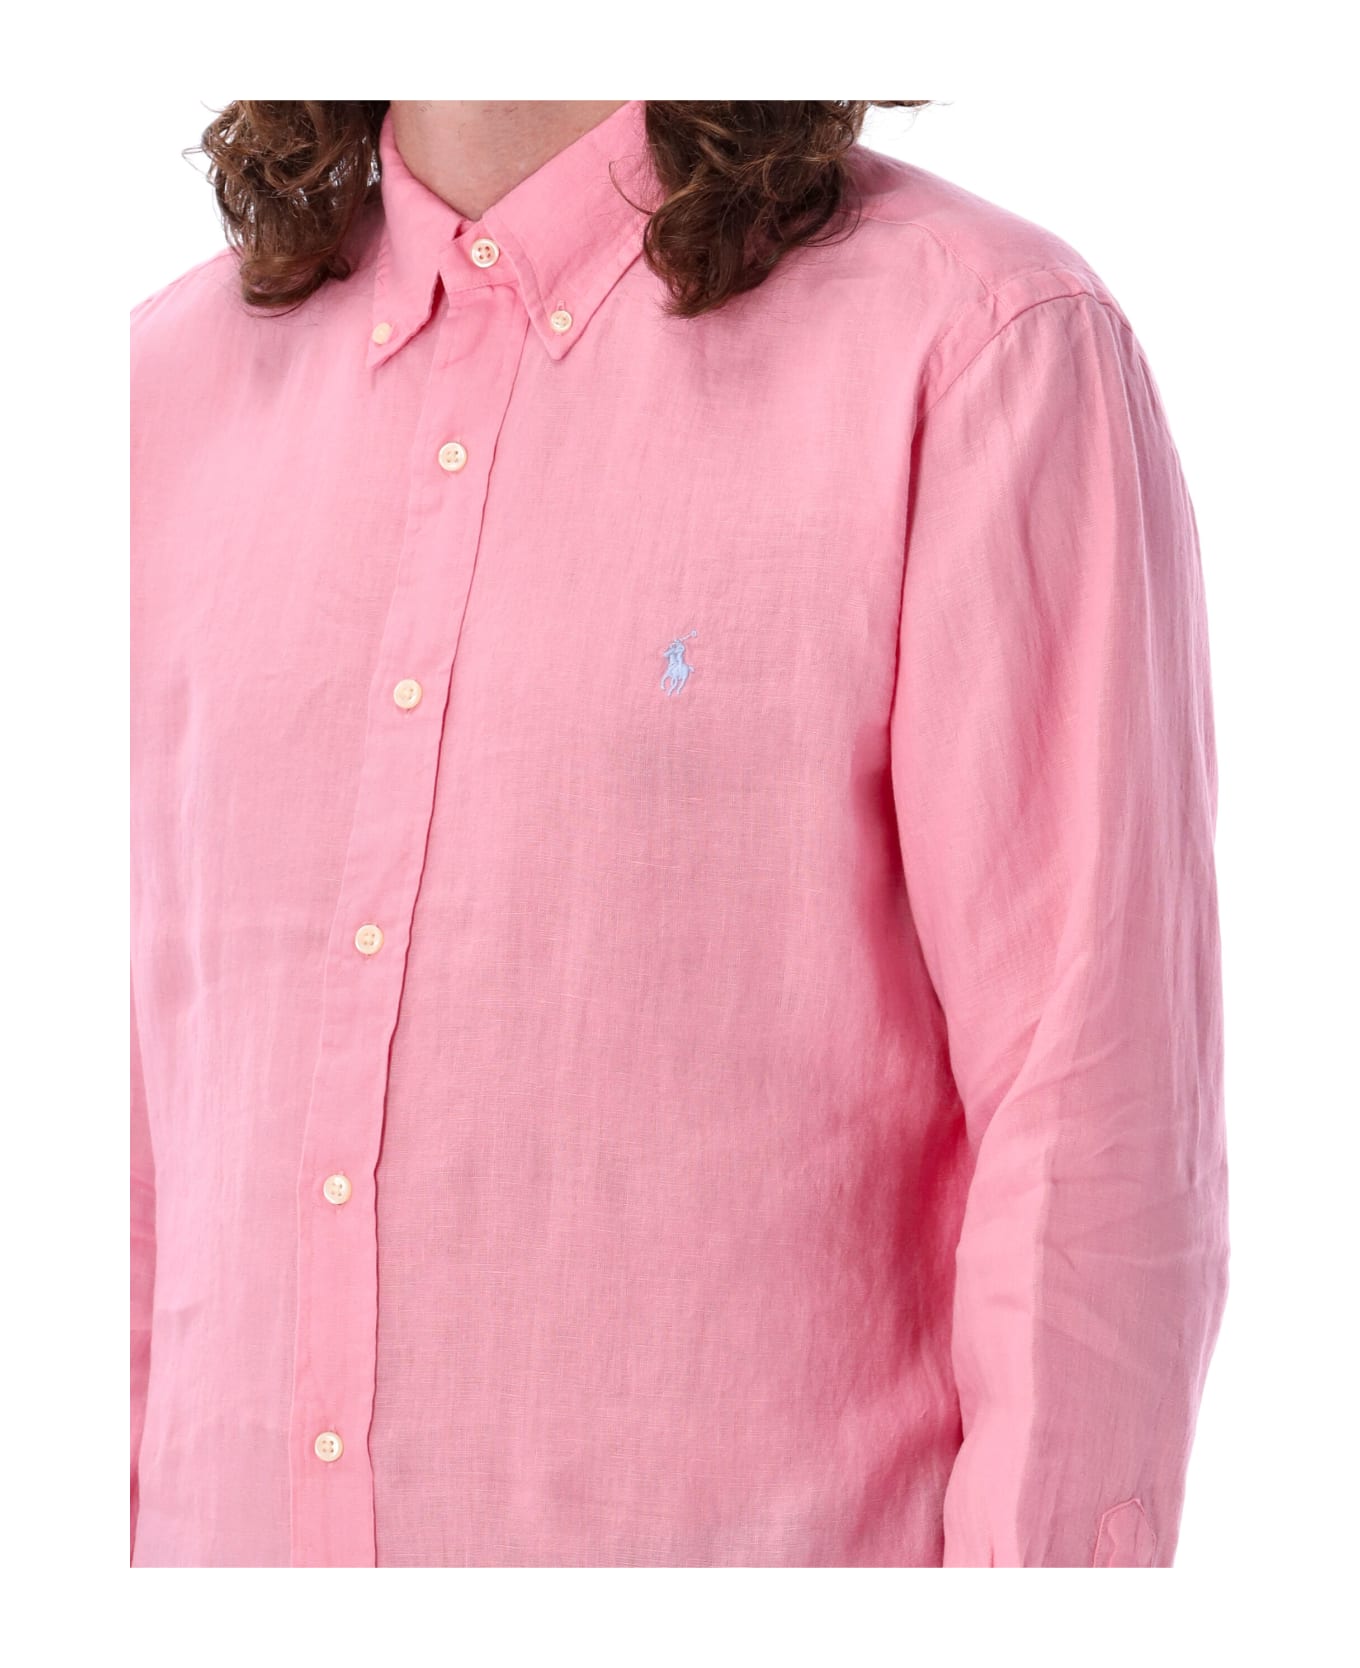 Ralph Lauren Custom Fit Shirt - Bright Pink